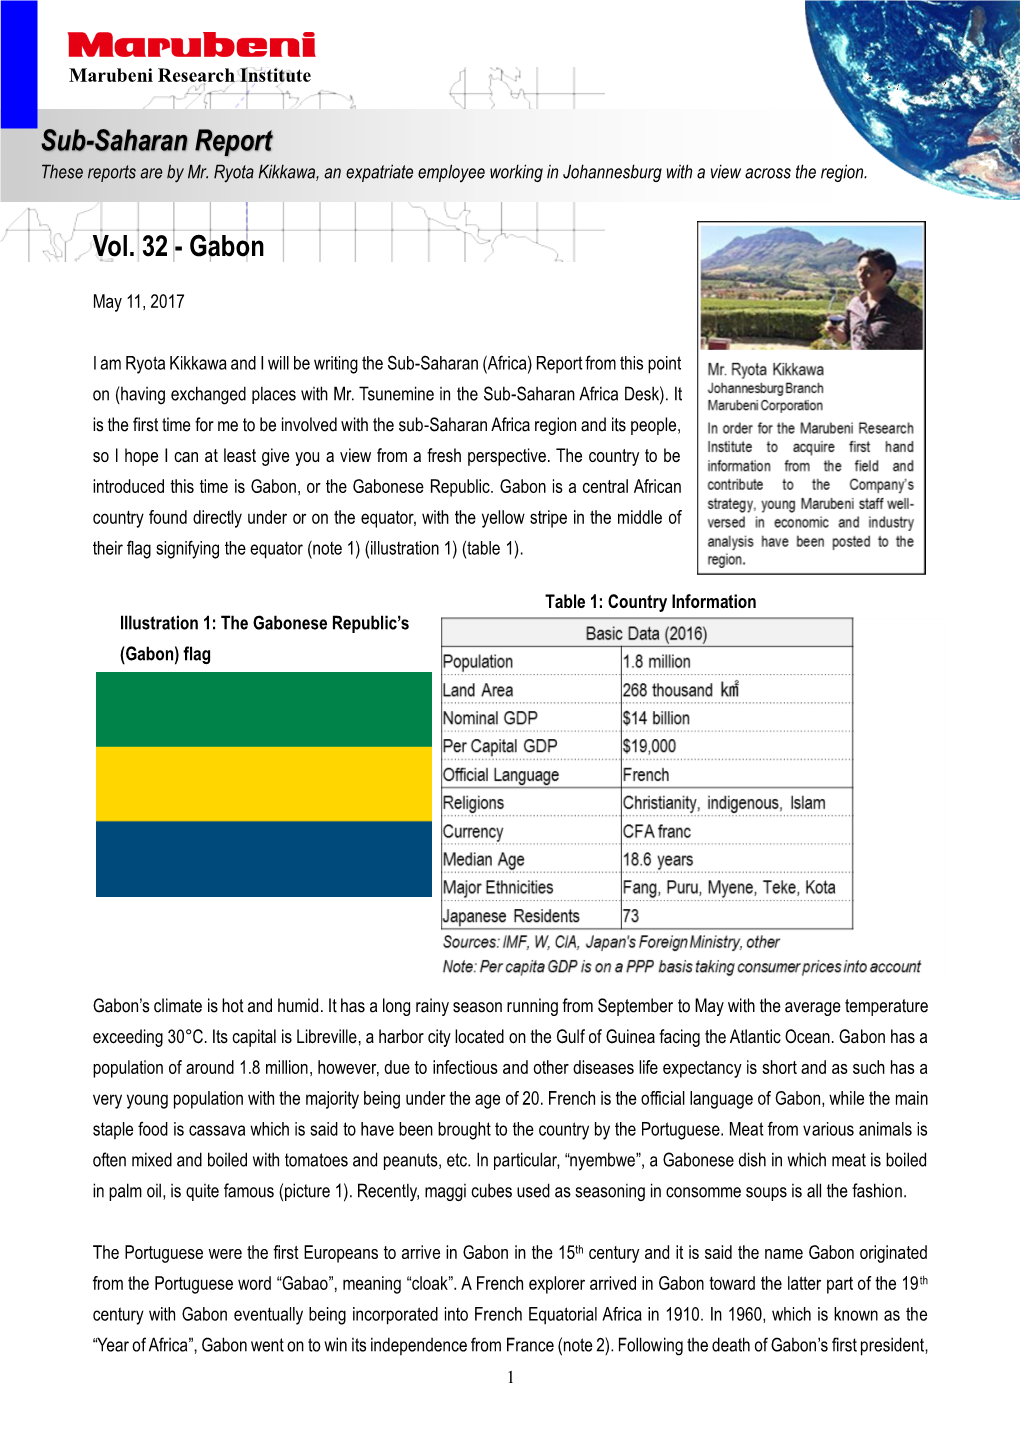 Vol. 32 - Gabon